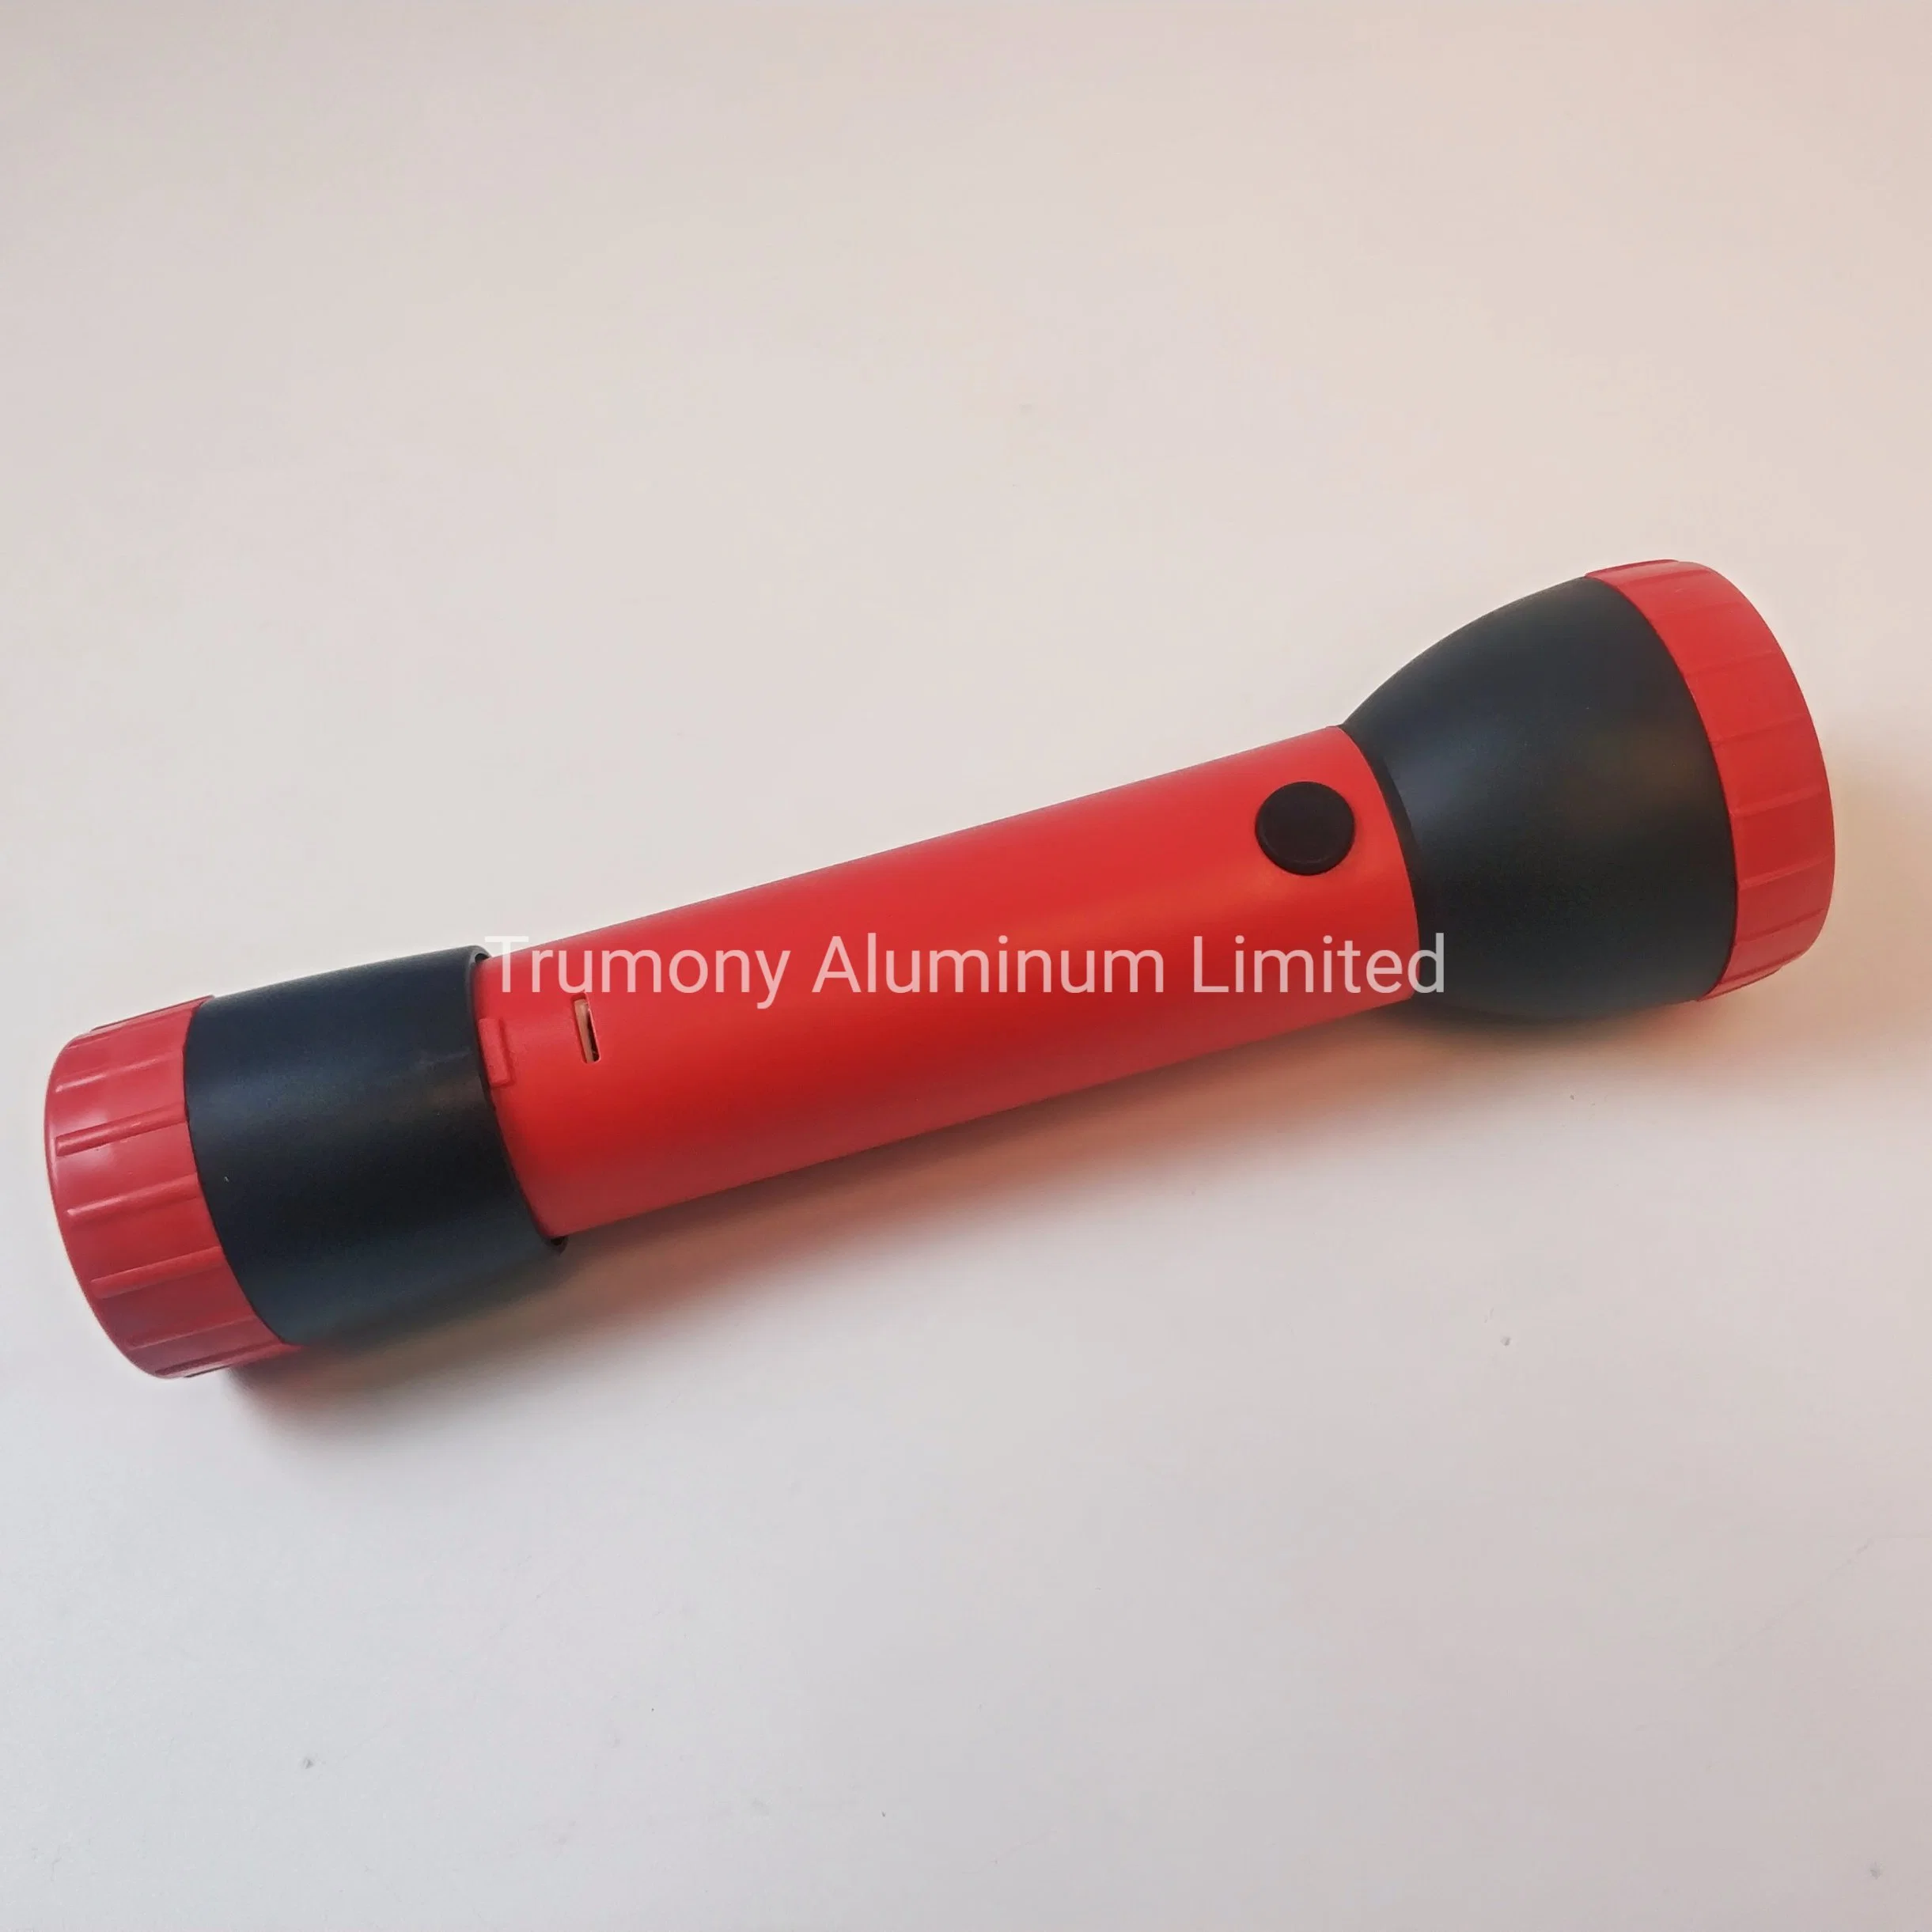 Kostengünstige Aluminium-Brennstoffzelle Batterie-Taschenlampe für die Industrie